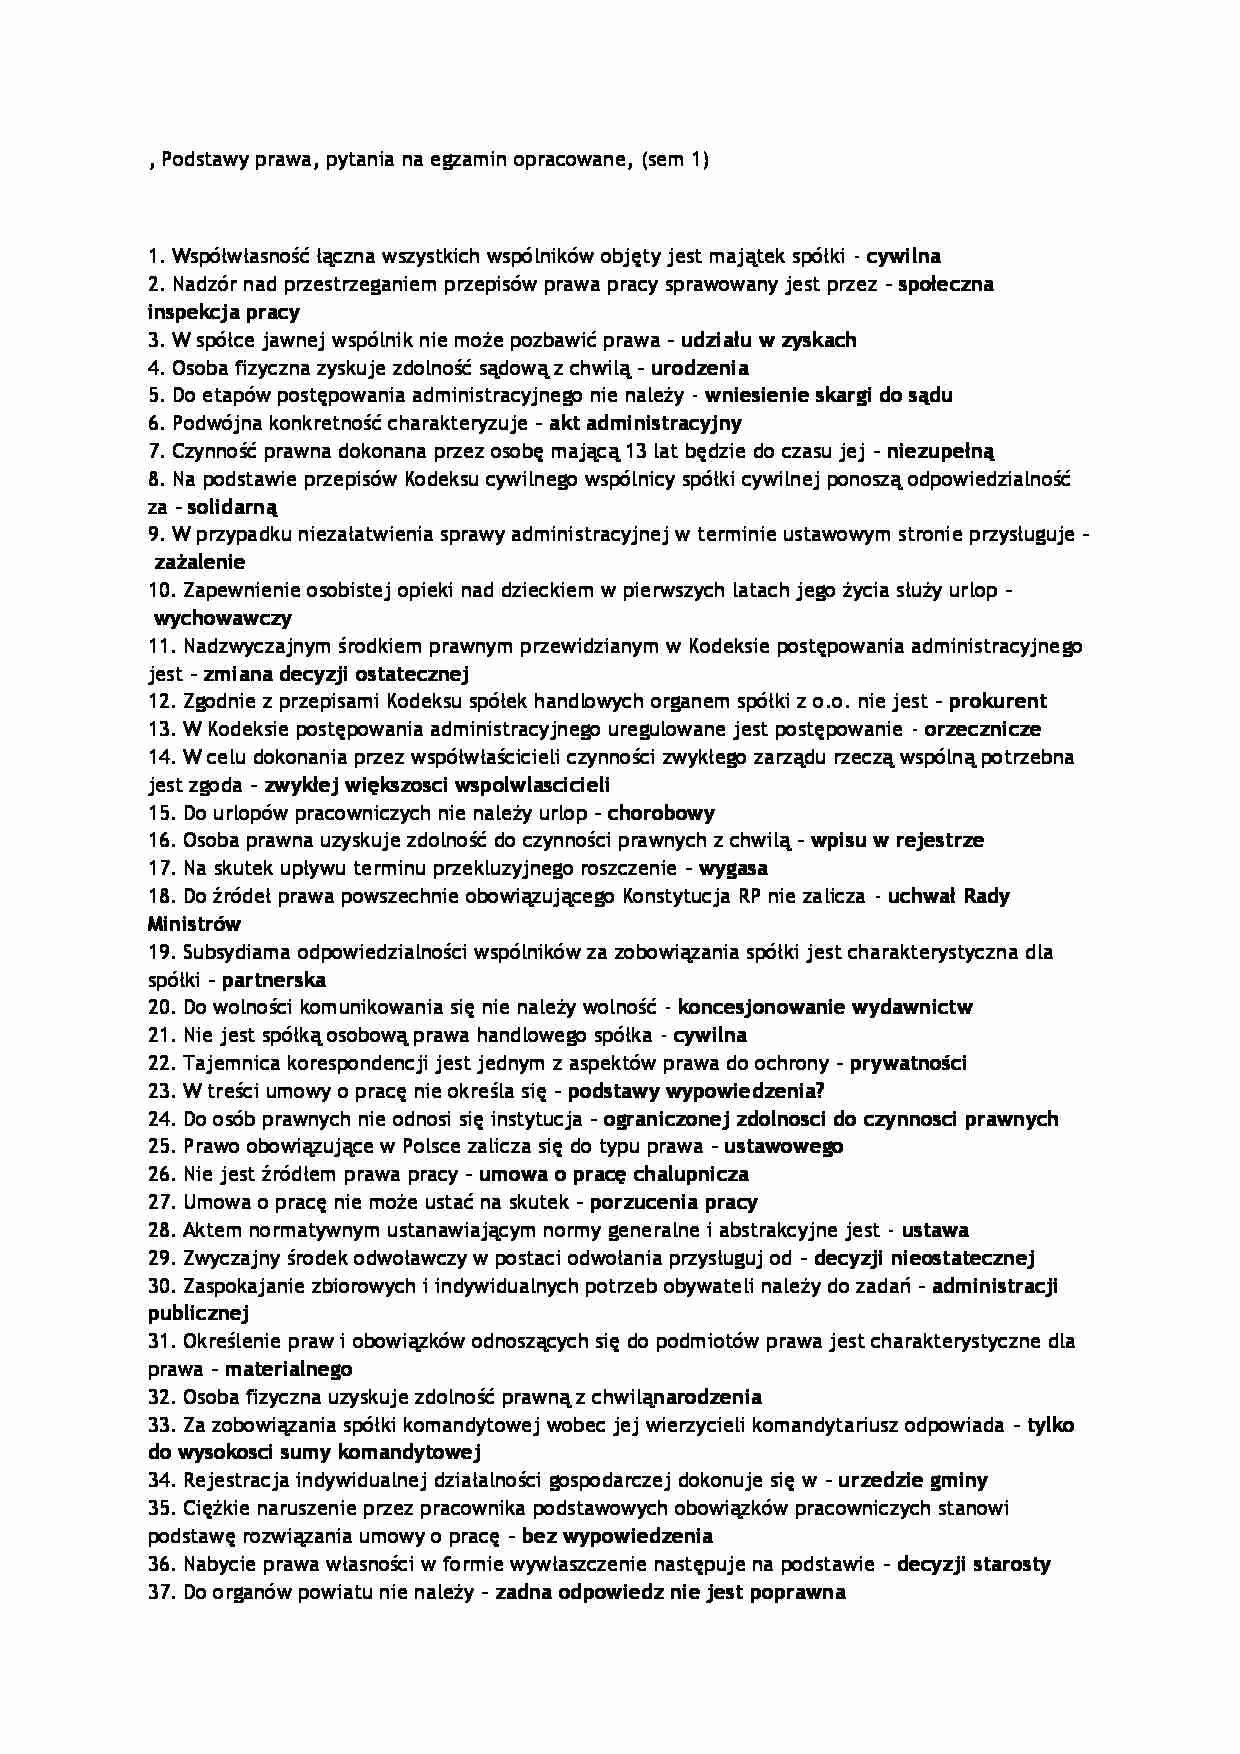 Podstawy Prawa - zagadnienia na egzamin (sem 1) - strona 1